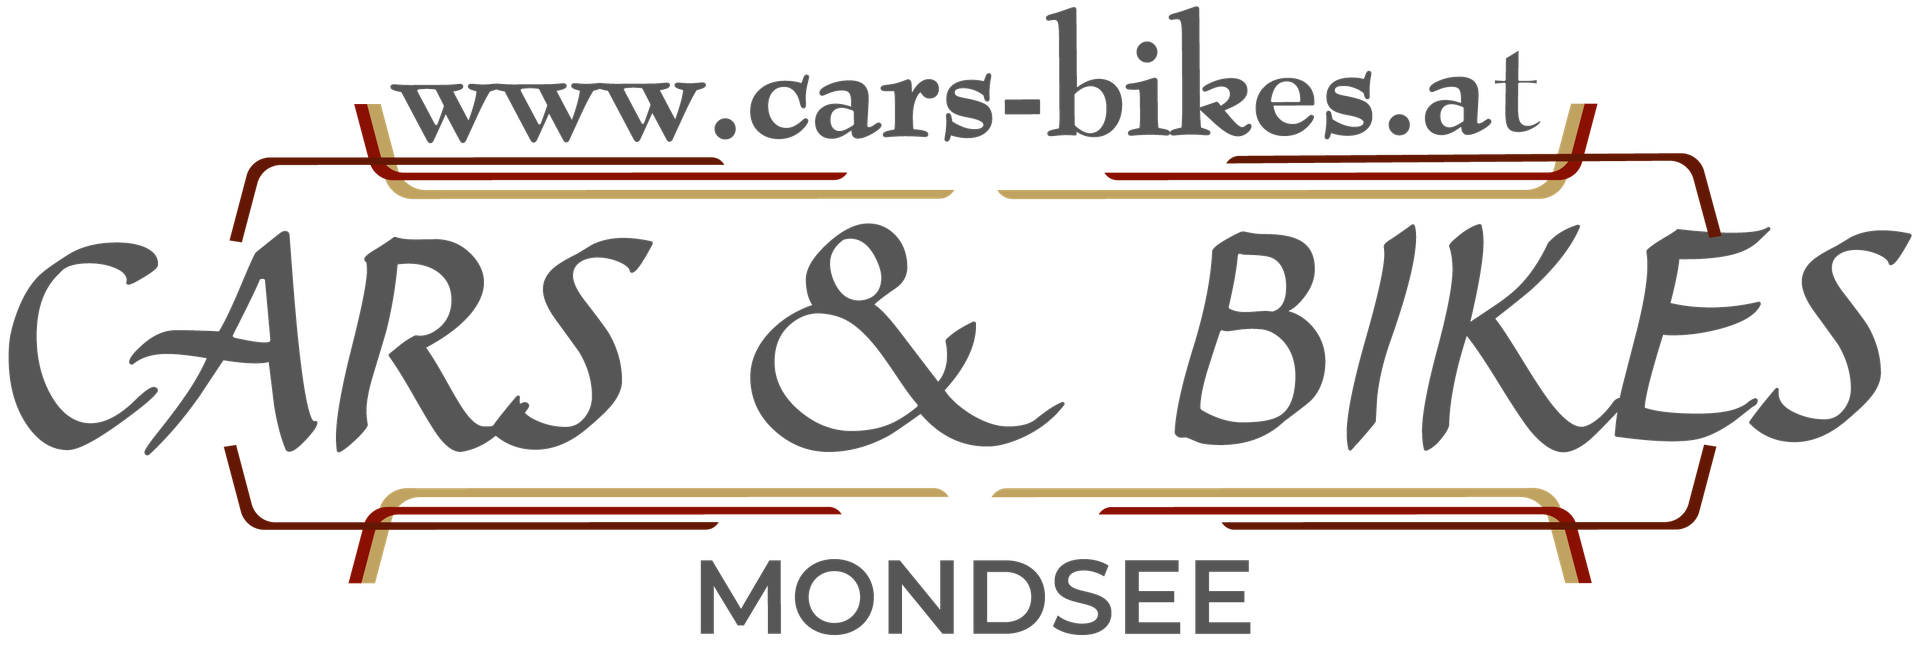 (c) Cars-bikes.at